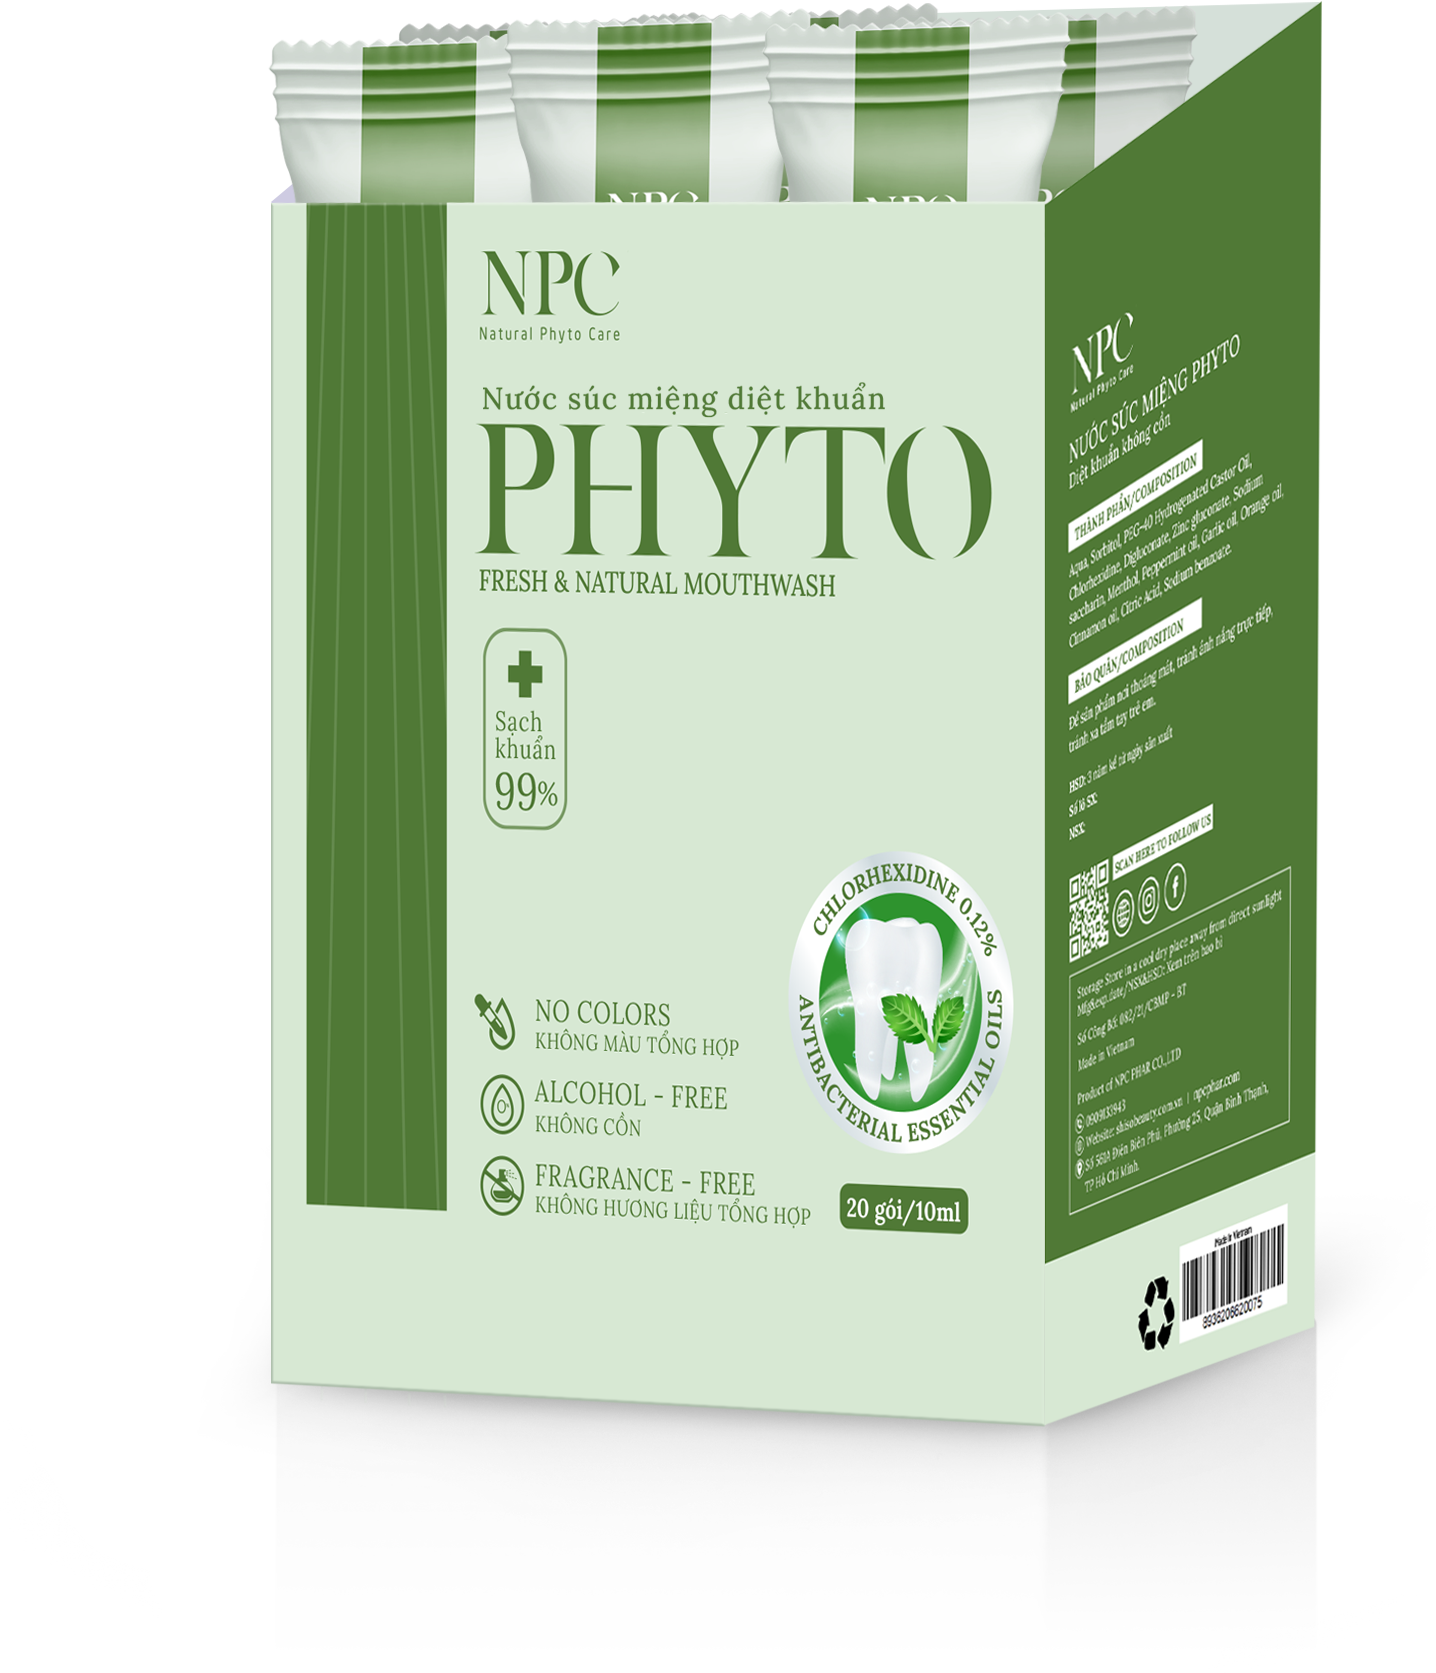 Nước súc miệng Phyto làm sạch khoang miệng 99.9%, tinh dầu thiên nhiên - Hộp 20 gói x 10ml/gói